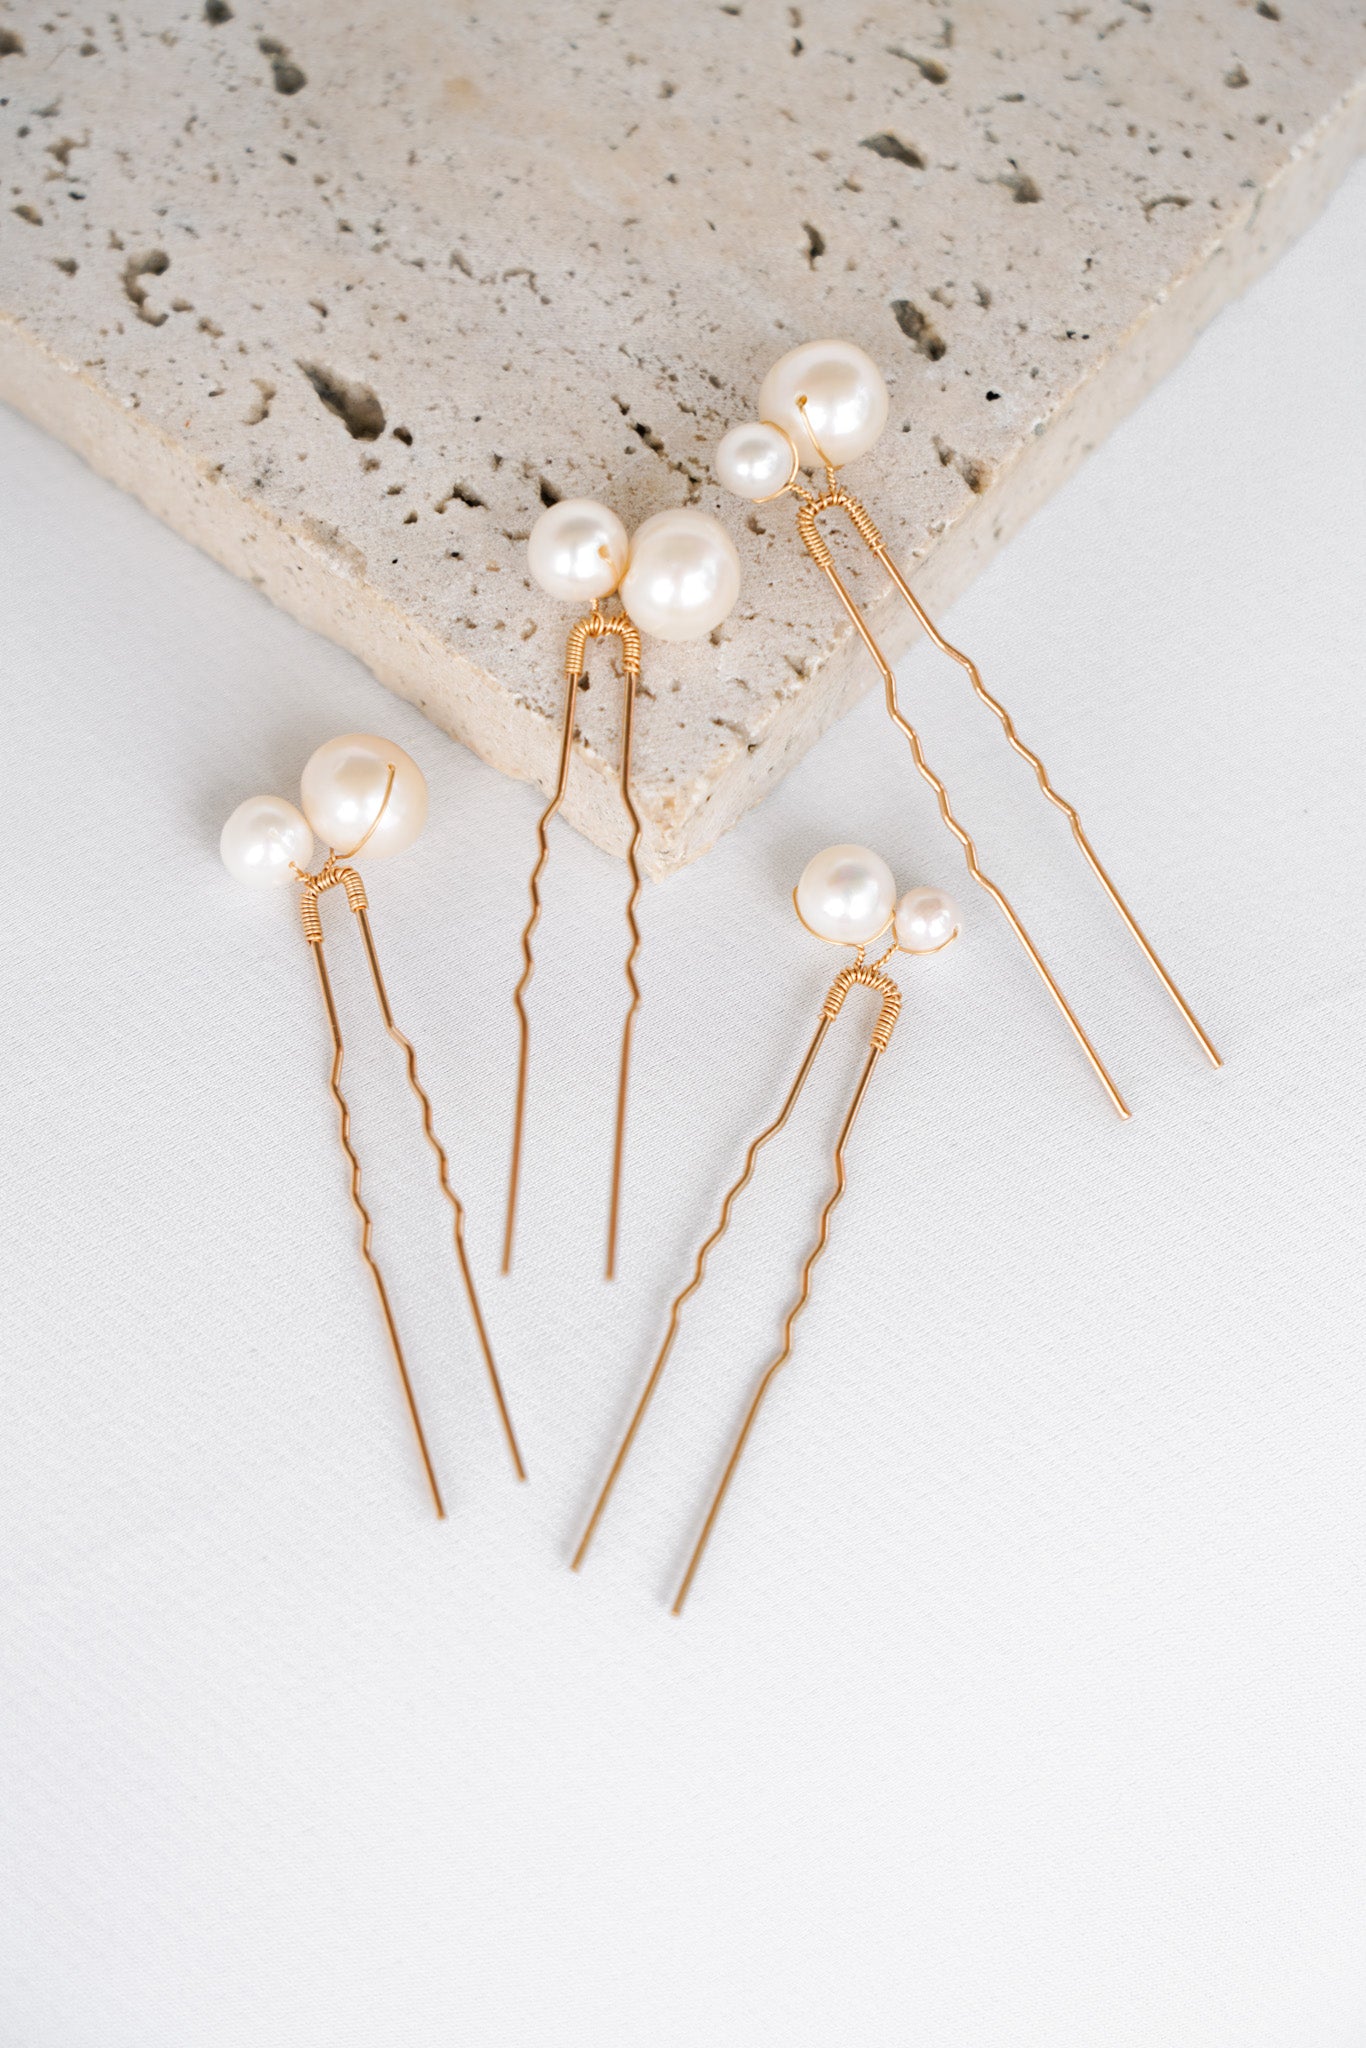 Quatre pics à cheveux dorés avec deux perles naturelles blanches de deux tailles différentes